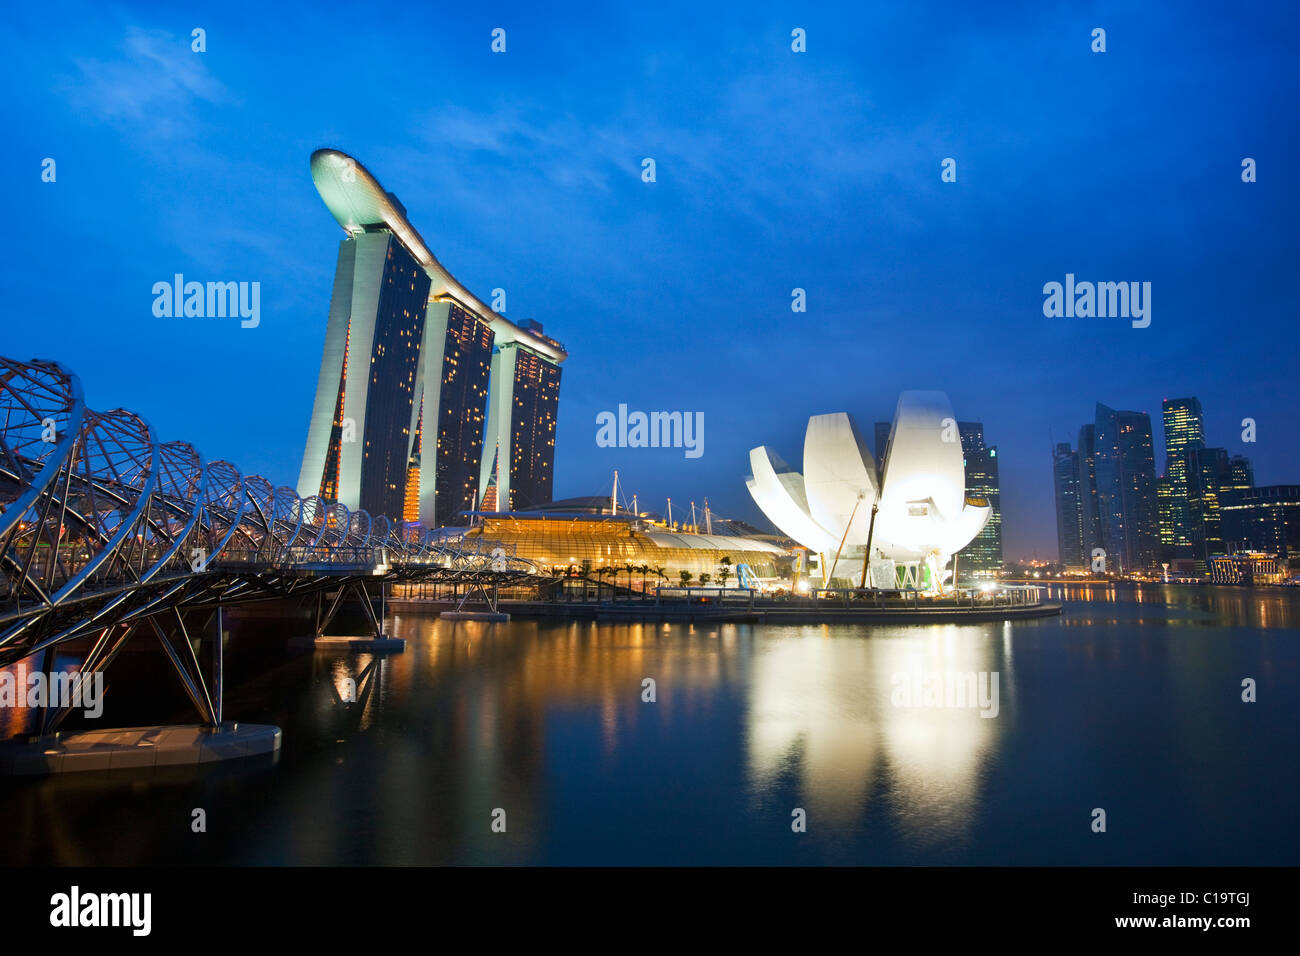 El Helix Bridge y Marina Bay Sands de Singapur. Marina Bay, Singapur Foto de stock